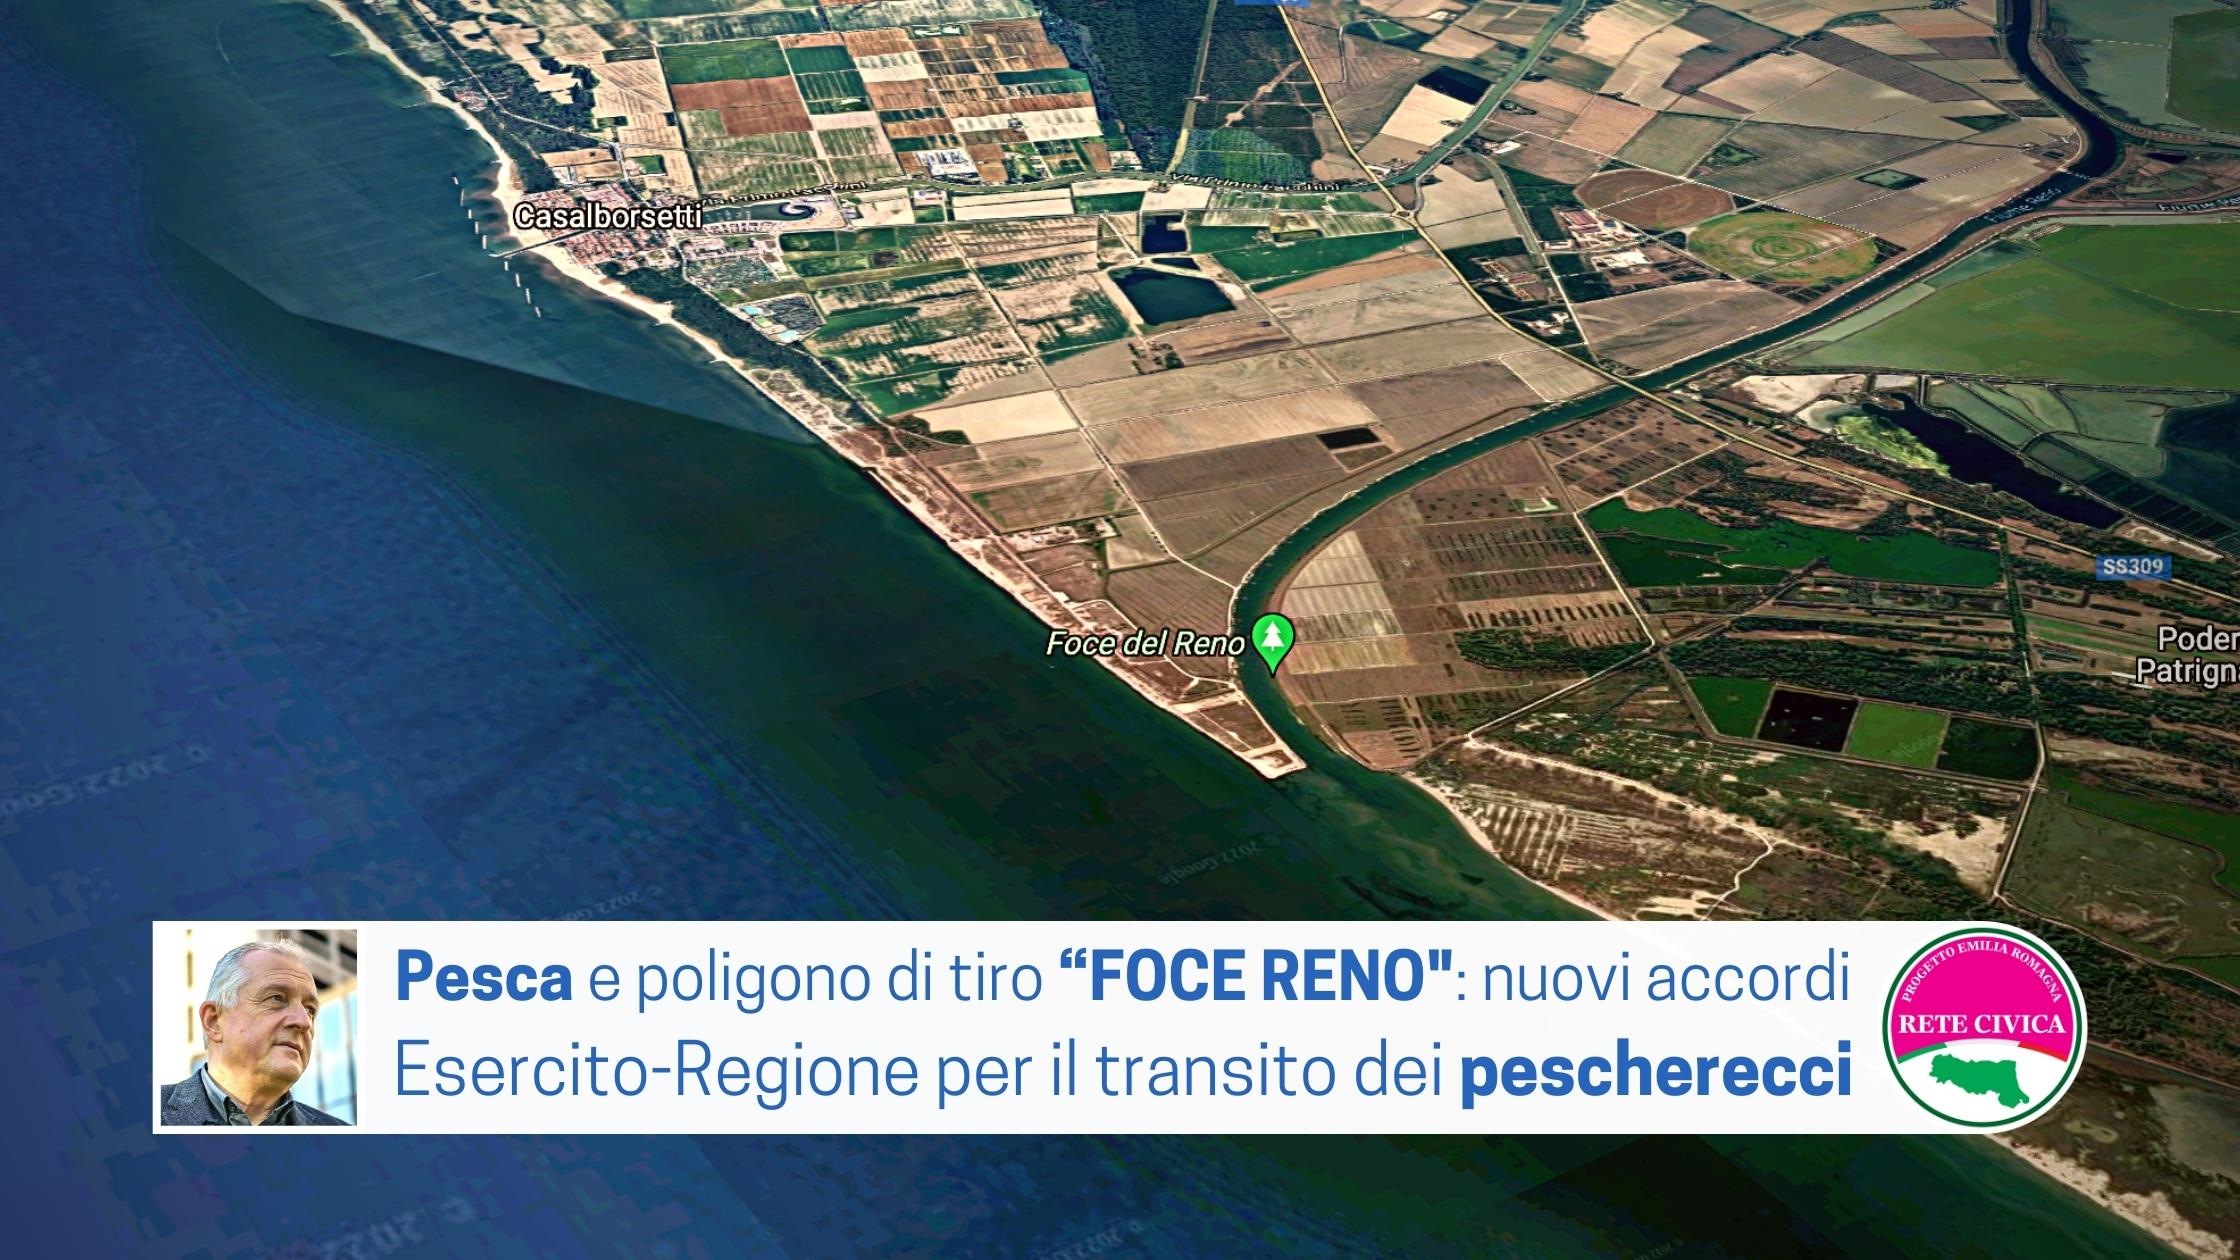 Al momento stai visualizzando PESCA E POLIGONO DI TIRO “FOCE RENO”: nuovi accordi Esercito-Regione per regolamentare il transito dei pescherecci